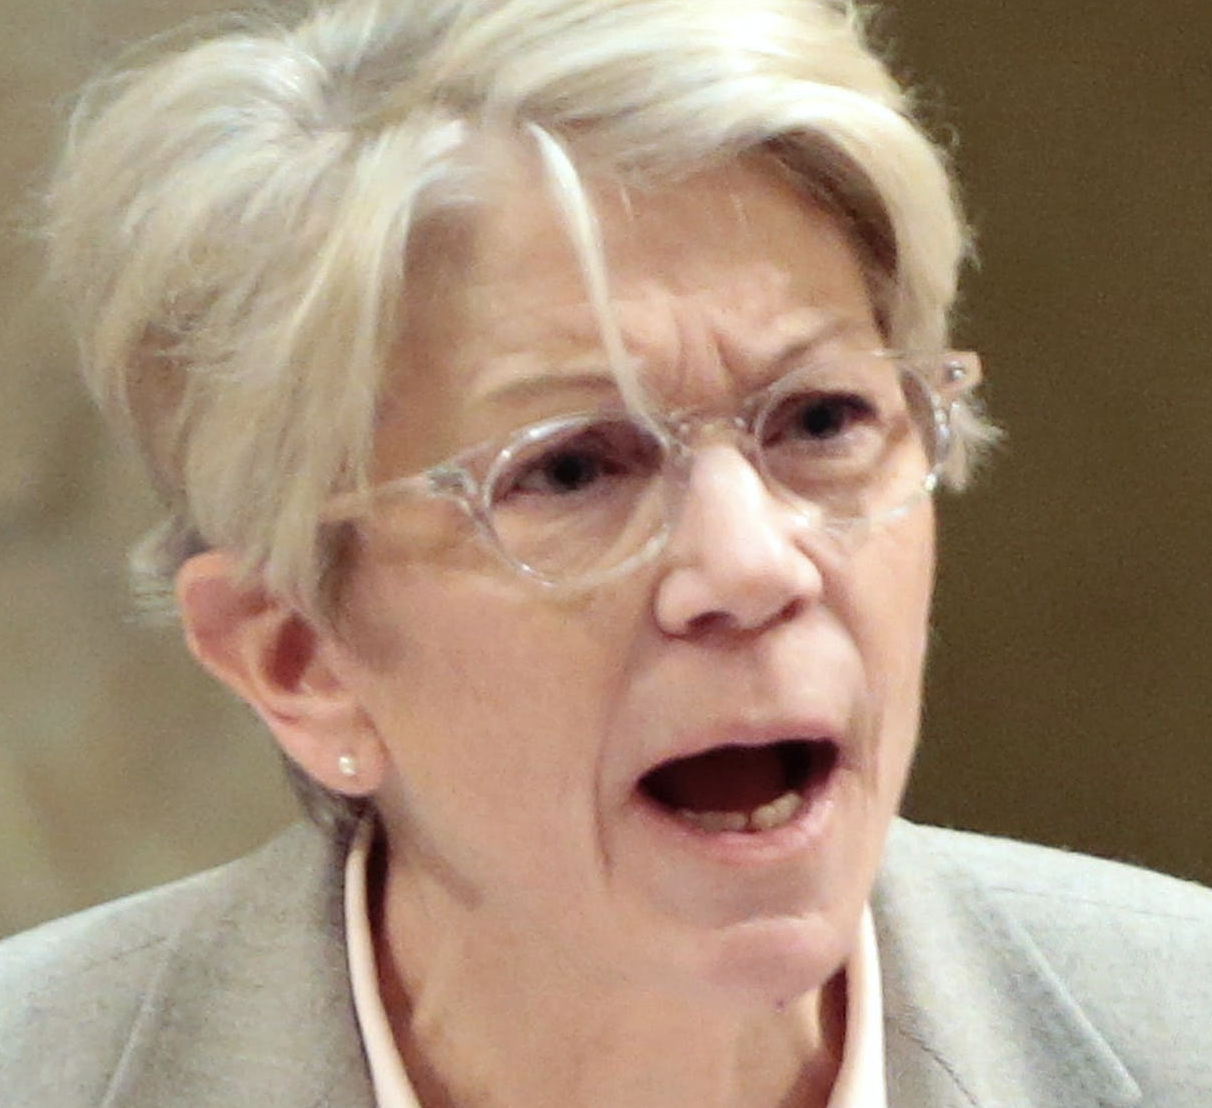 State Sen. Janet Bewley